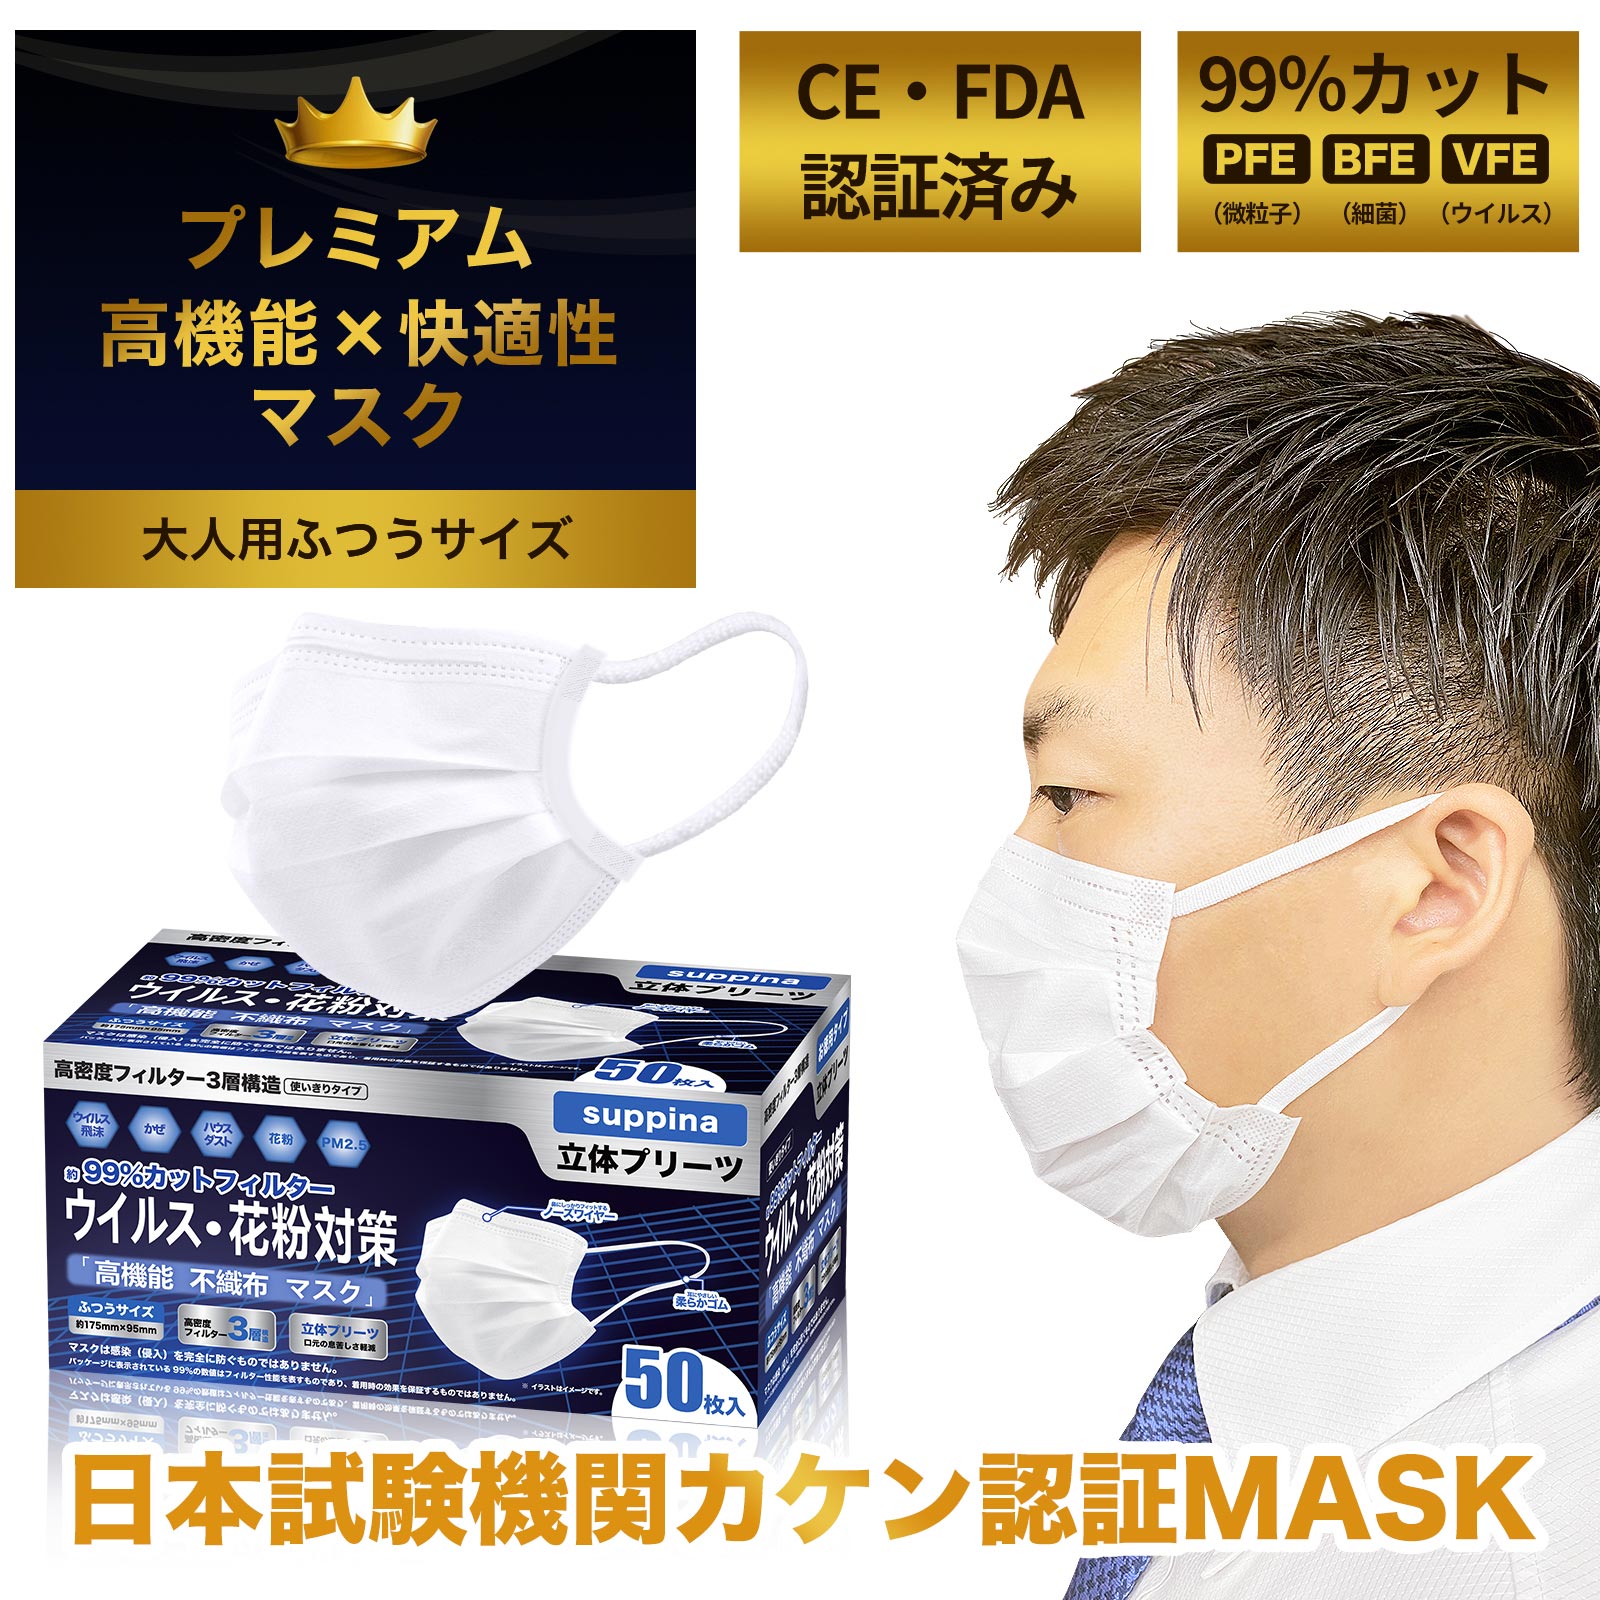 日本機構検査済 suppina 99%CUT マスク 大人用 普通サイズ 高機能・高品質マスク お徳用 50枚入 MASK